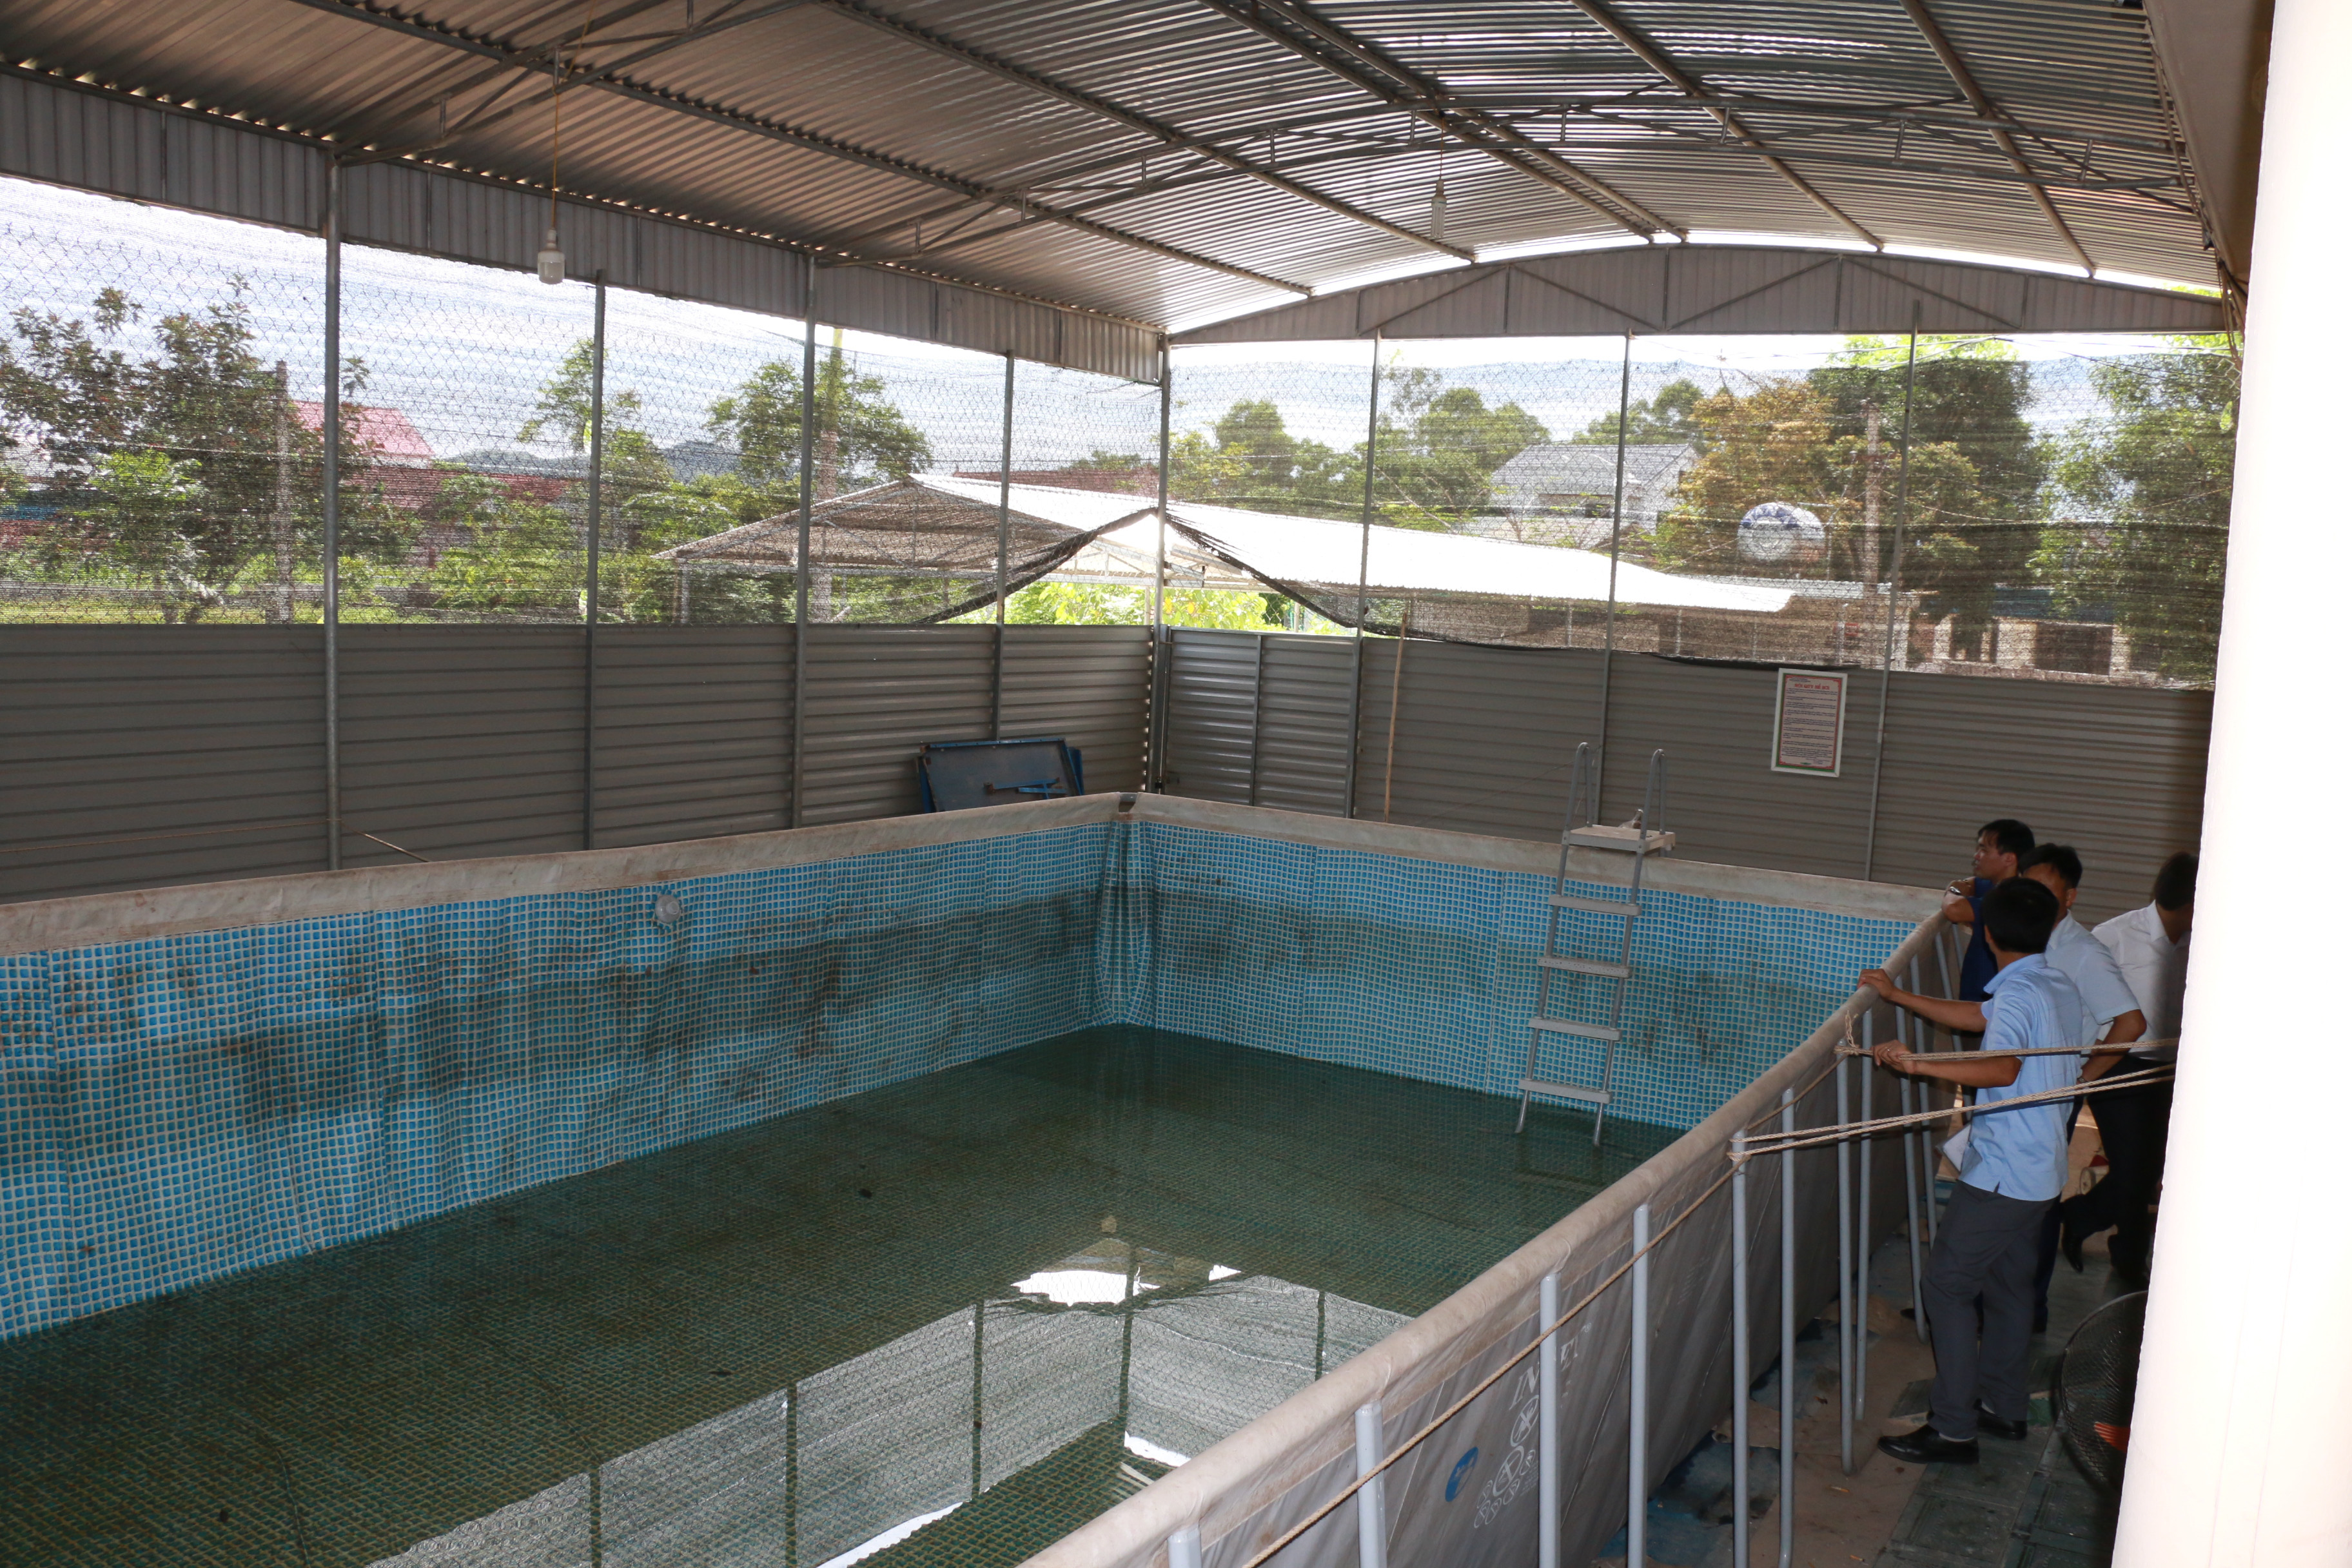 Bể bơi của Trường THCS Nghĩa Hội đã được trang bị 2 năm nhưng cho đến thời điểm này chưa triển khai được việc dạy bơi vì học sinh vẫn đang phải học chính khóa. Ảnh: Mỹ Hà